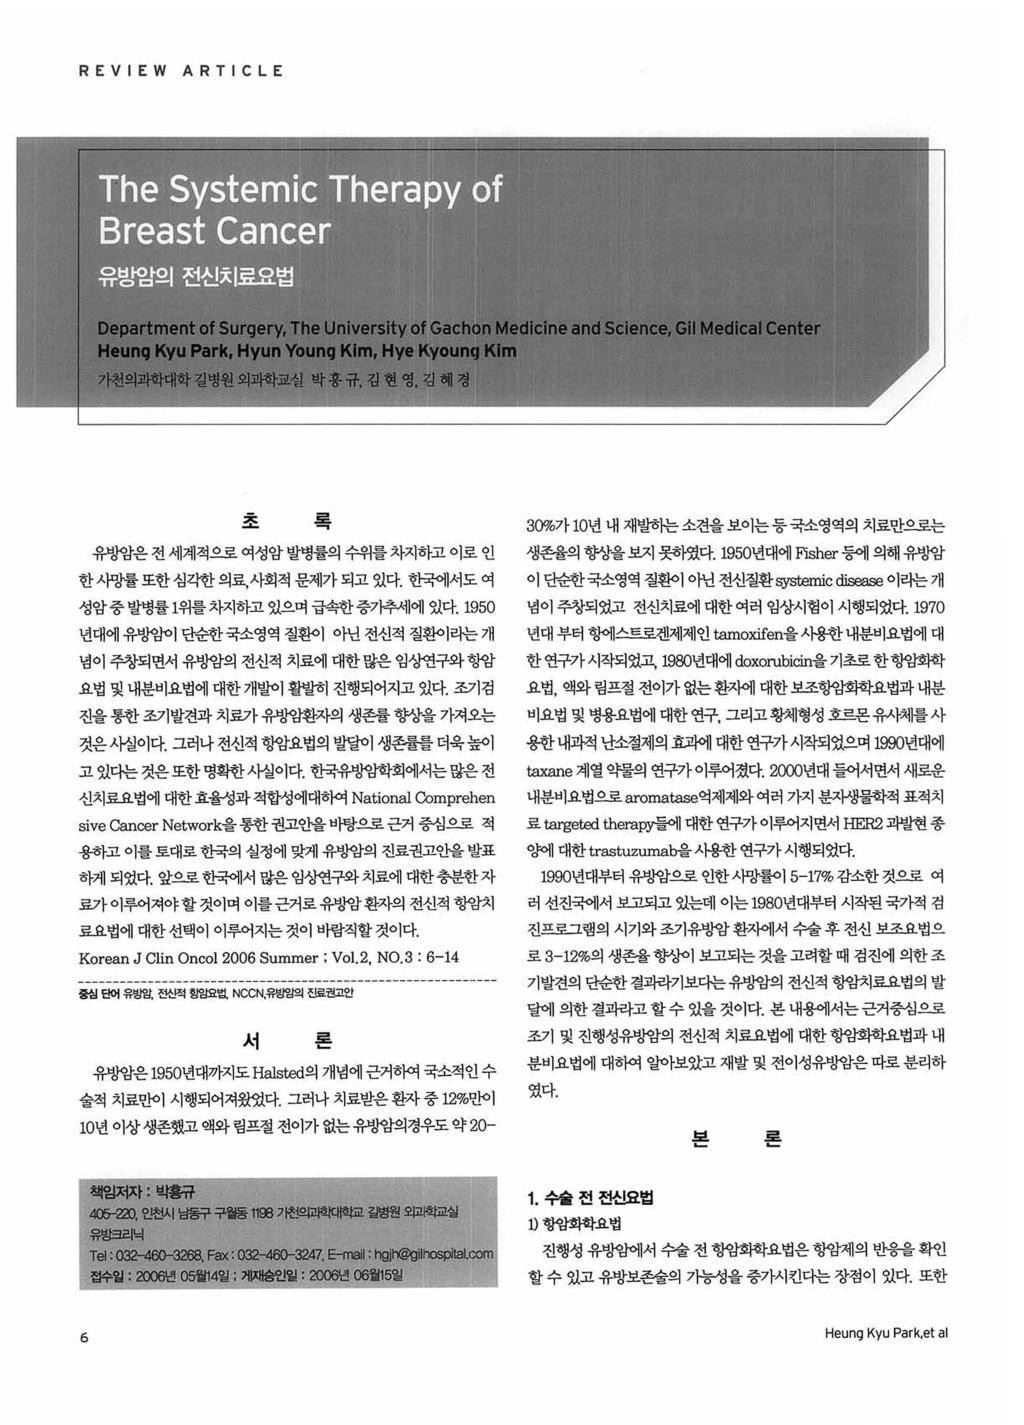 REVIEW ARTICLE x.;.0.;. 록 유방암은전세계적으로여성암발병률의수위를차지하고이로인 한사망률또한심각한의료, 사회적문제가되고있다. 한국에서도여 성암중발병률 1 위를차지하고있으며급속한중기추세에었다.